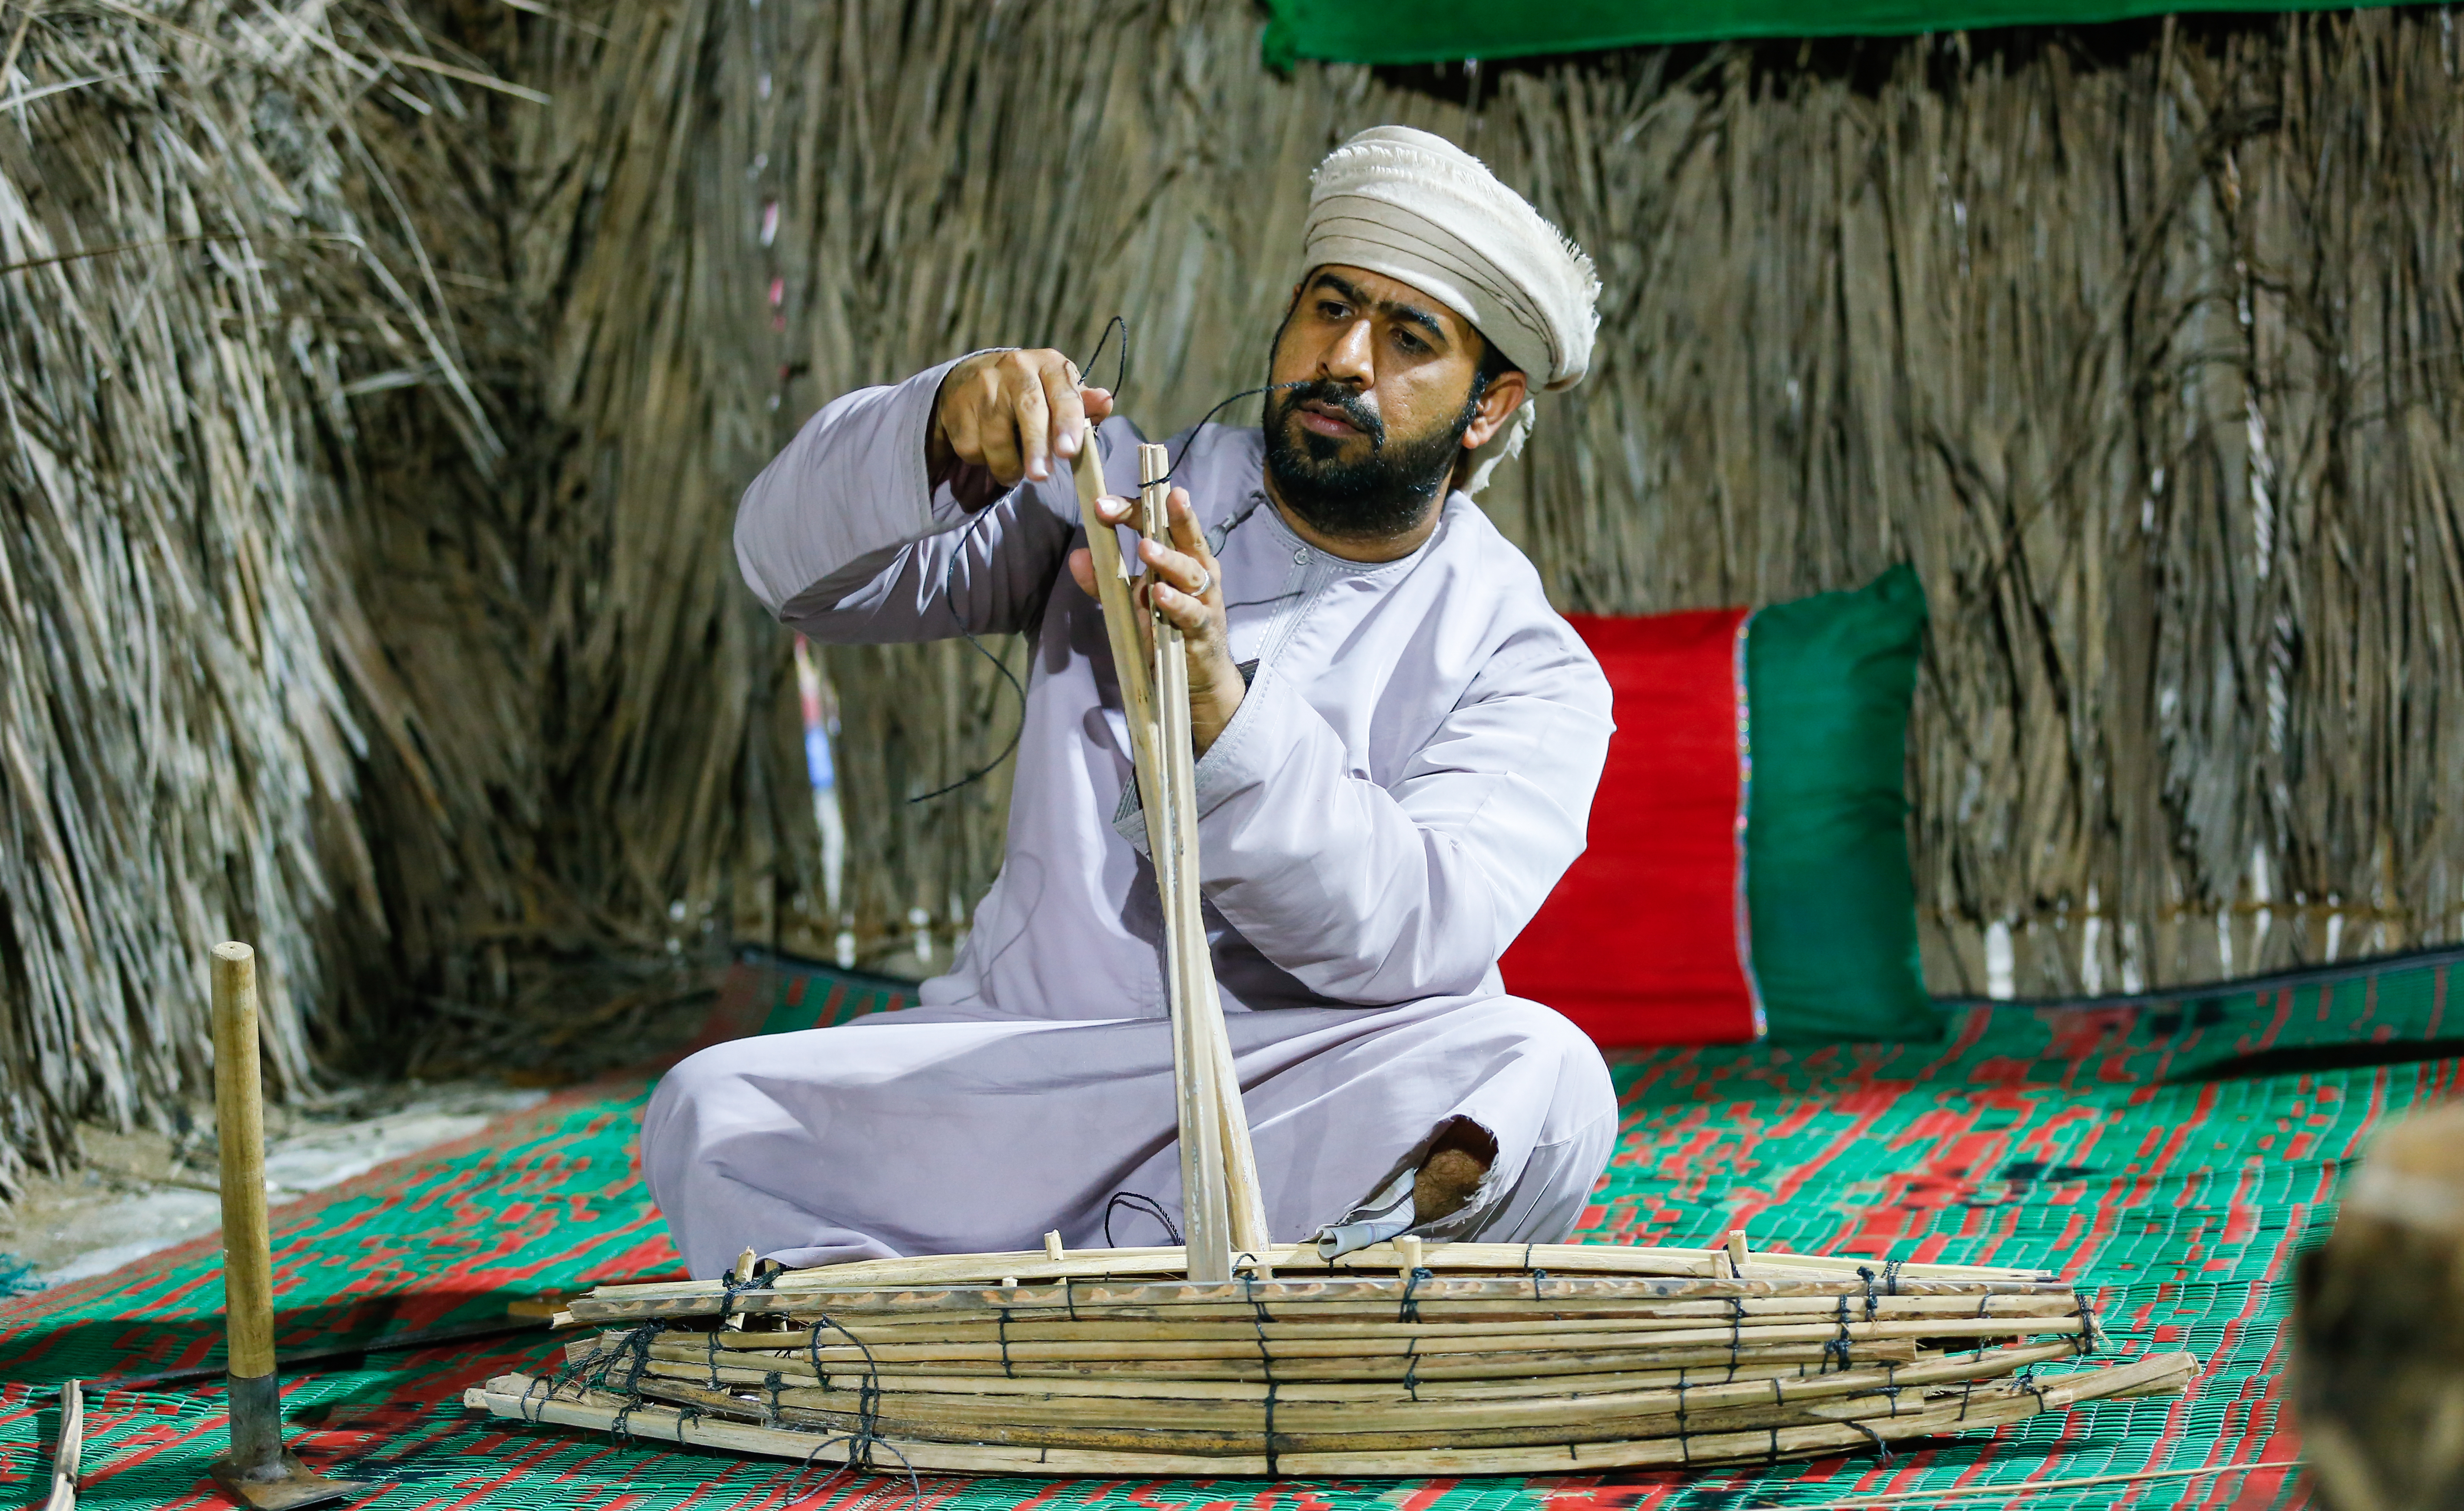 #OmanPride: Heritage Village at Muscat Festival